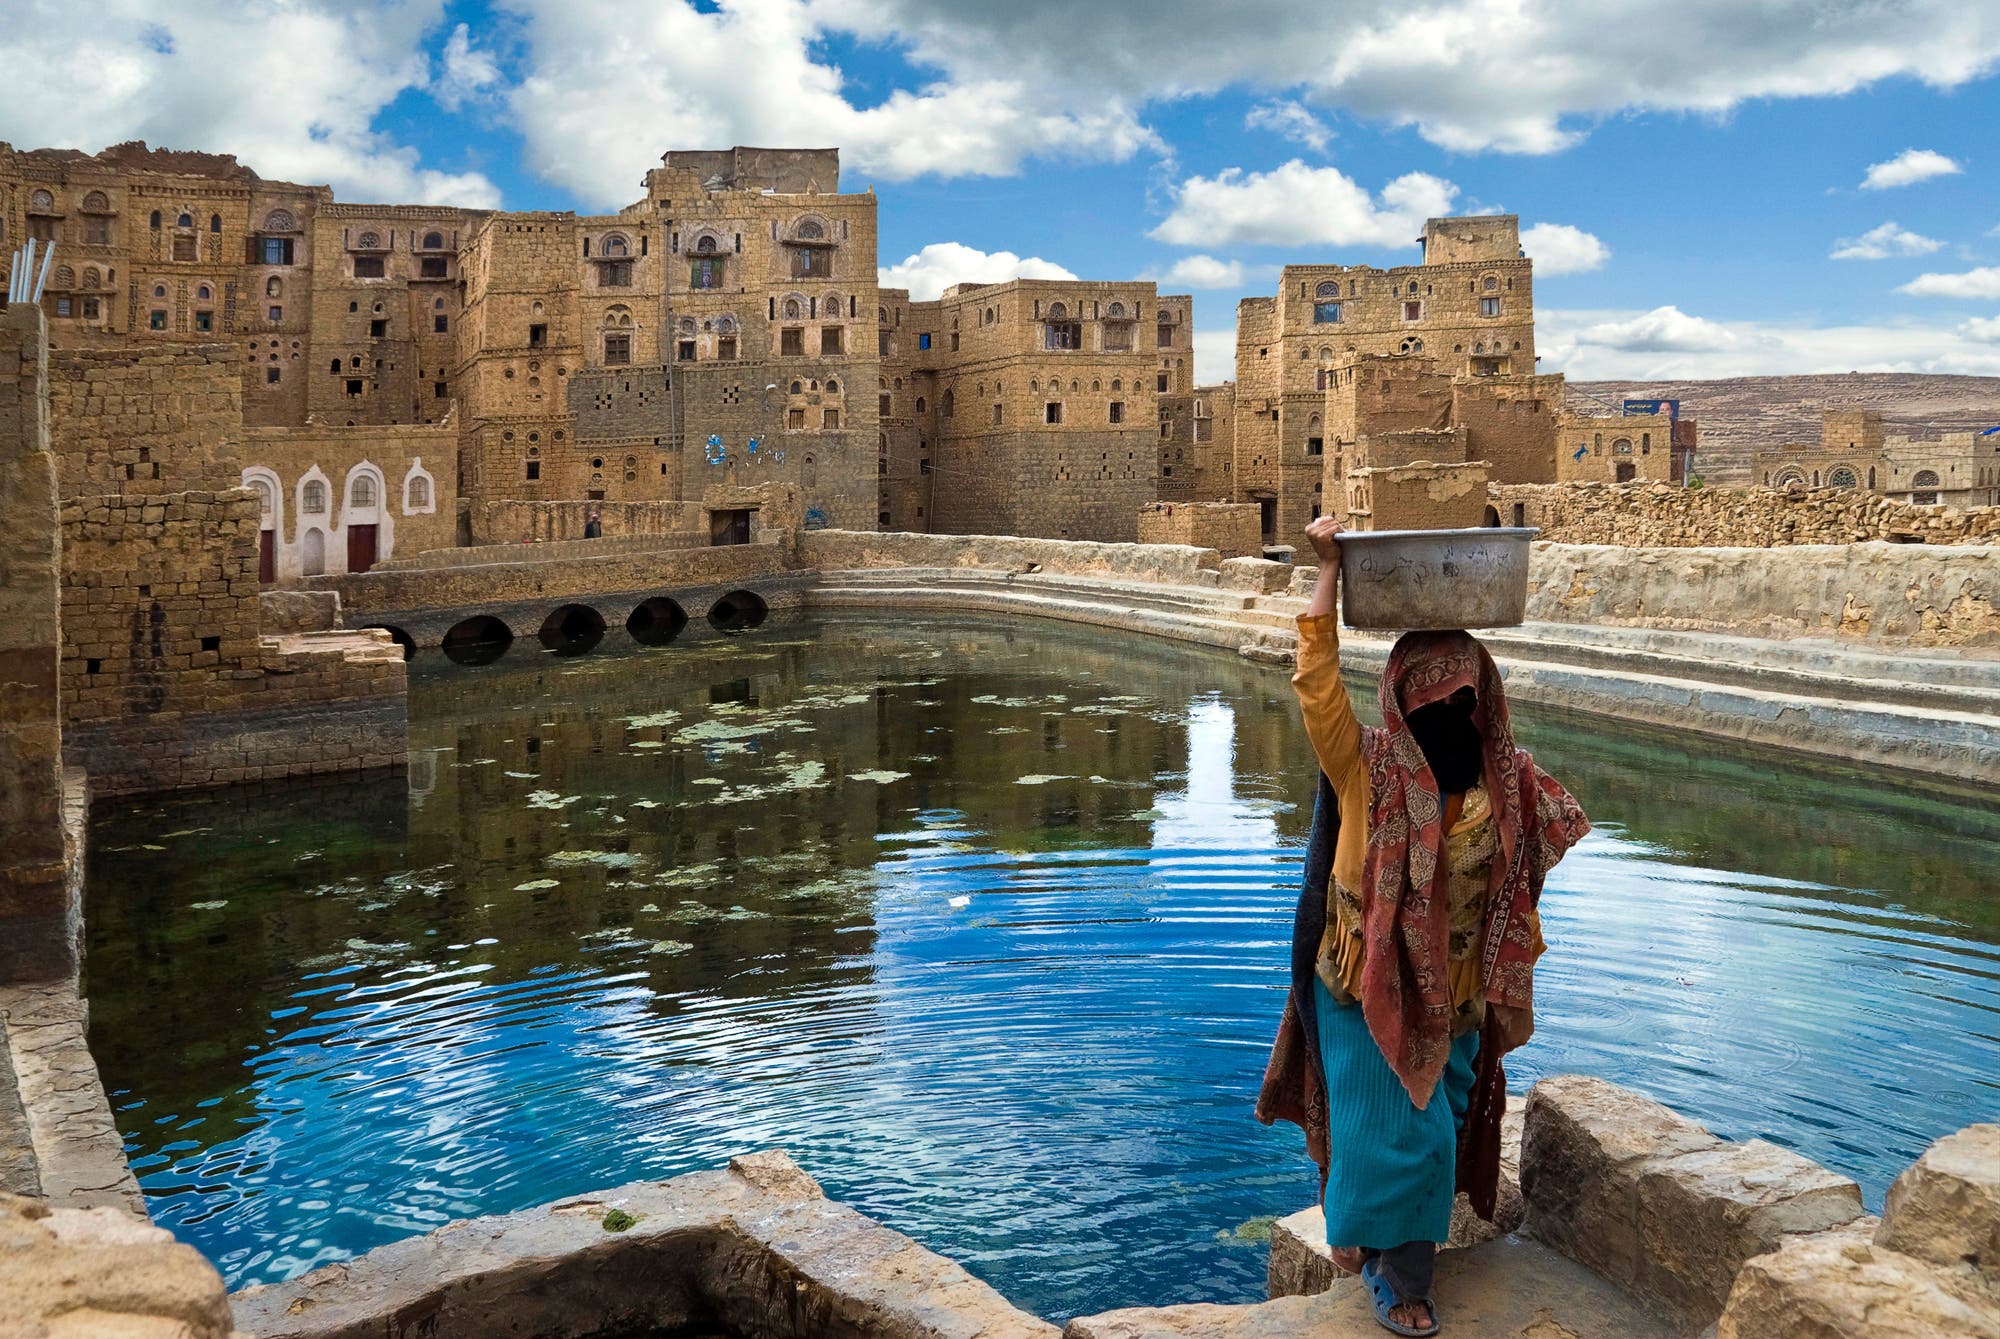 Jemenitin holt Wasser an einem öffentlichen Basin